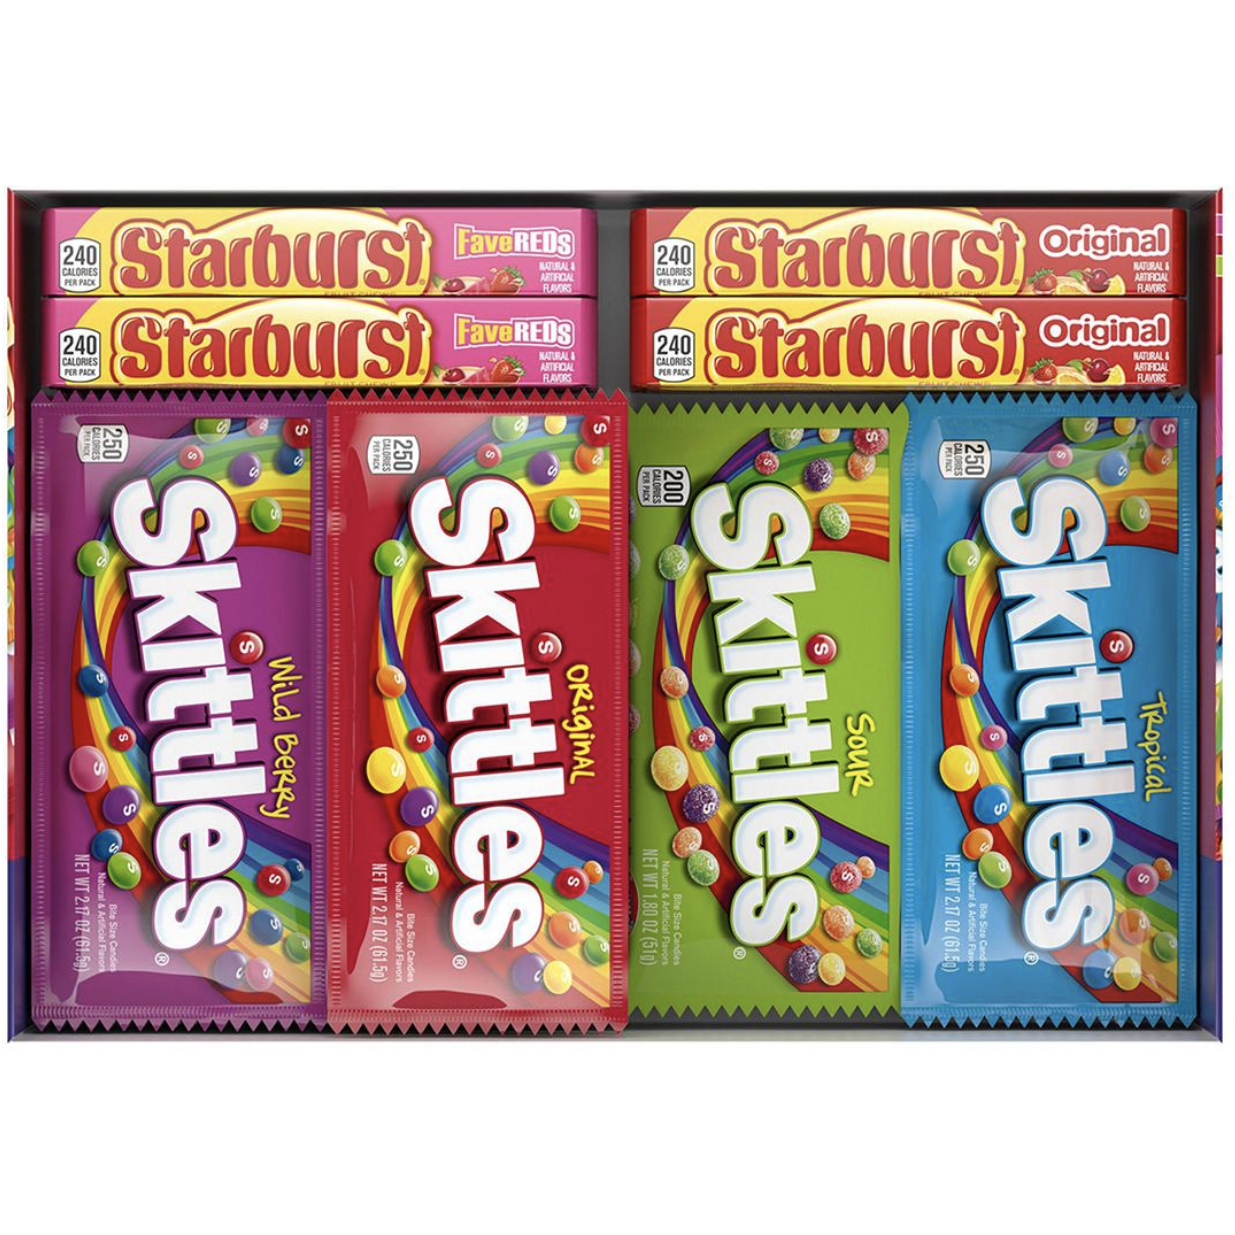 Starburst and Skittles Candy Variety Box, 30 ct.